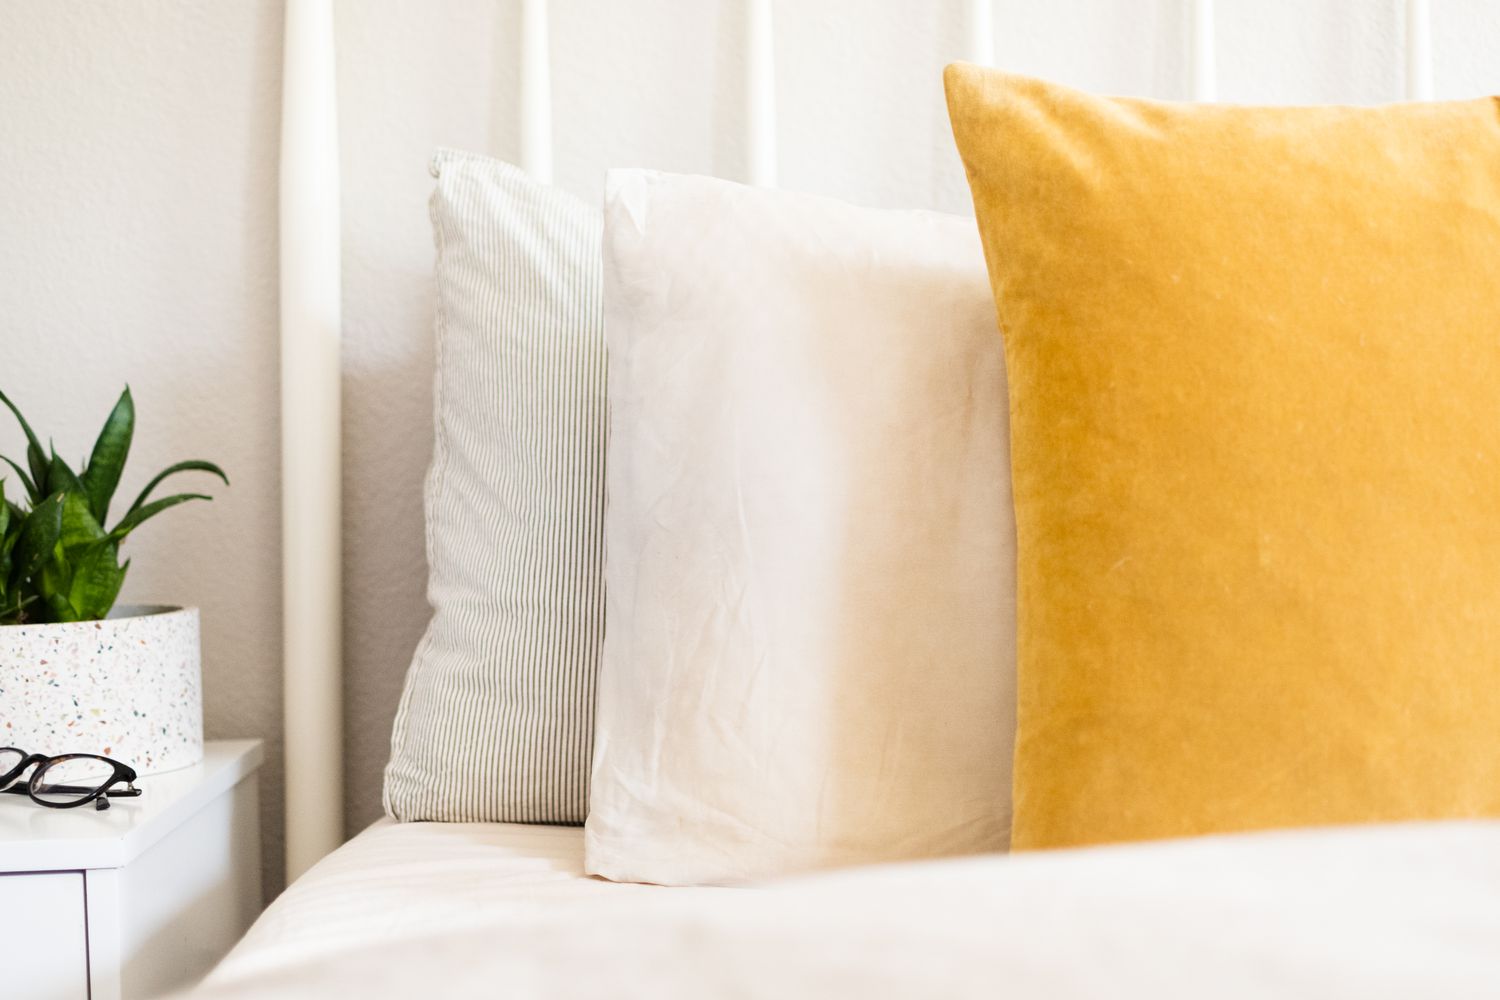 Weiße und gelbe Kissen auf dem Bett in Großaufnahme